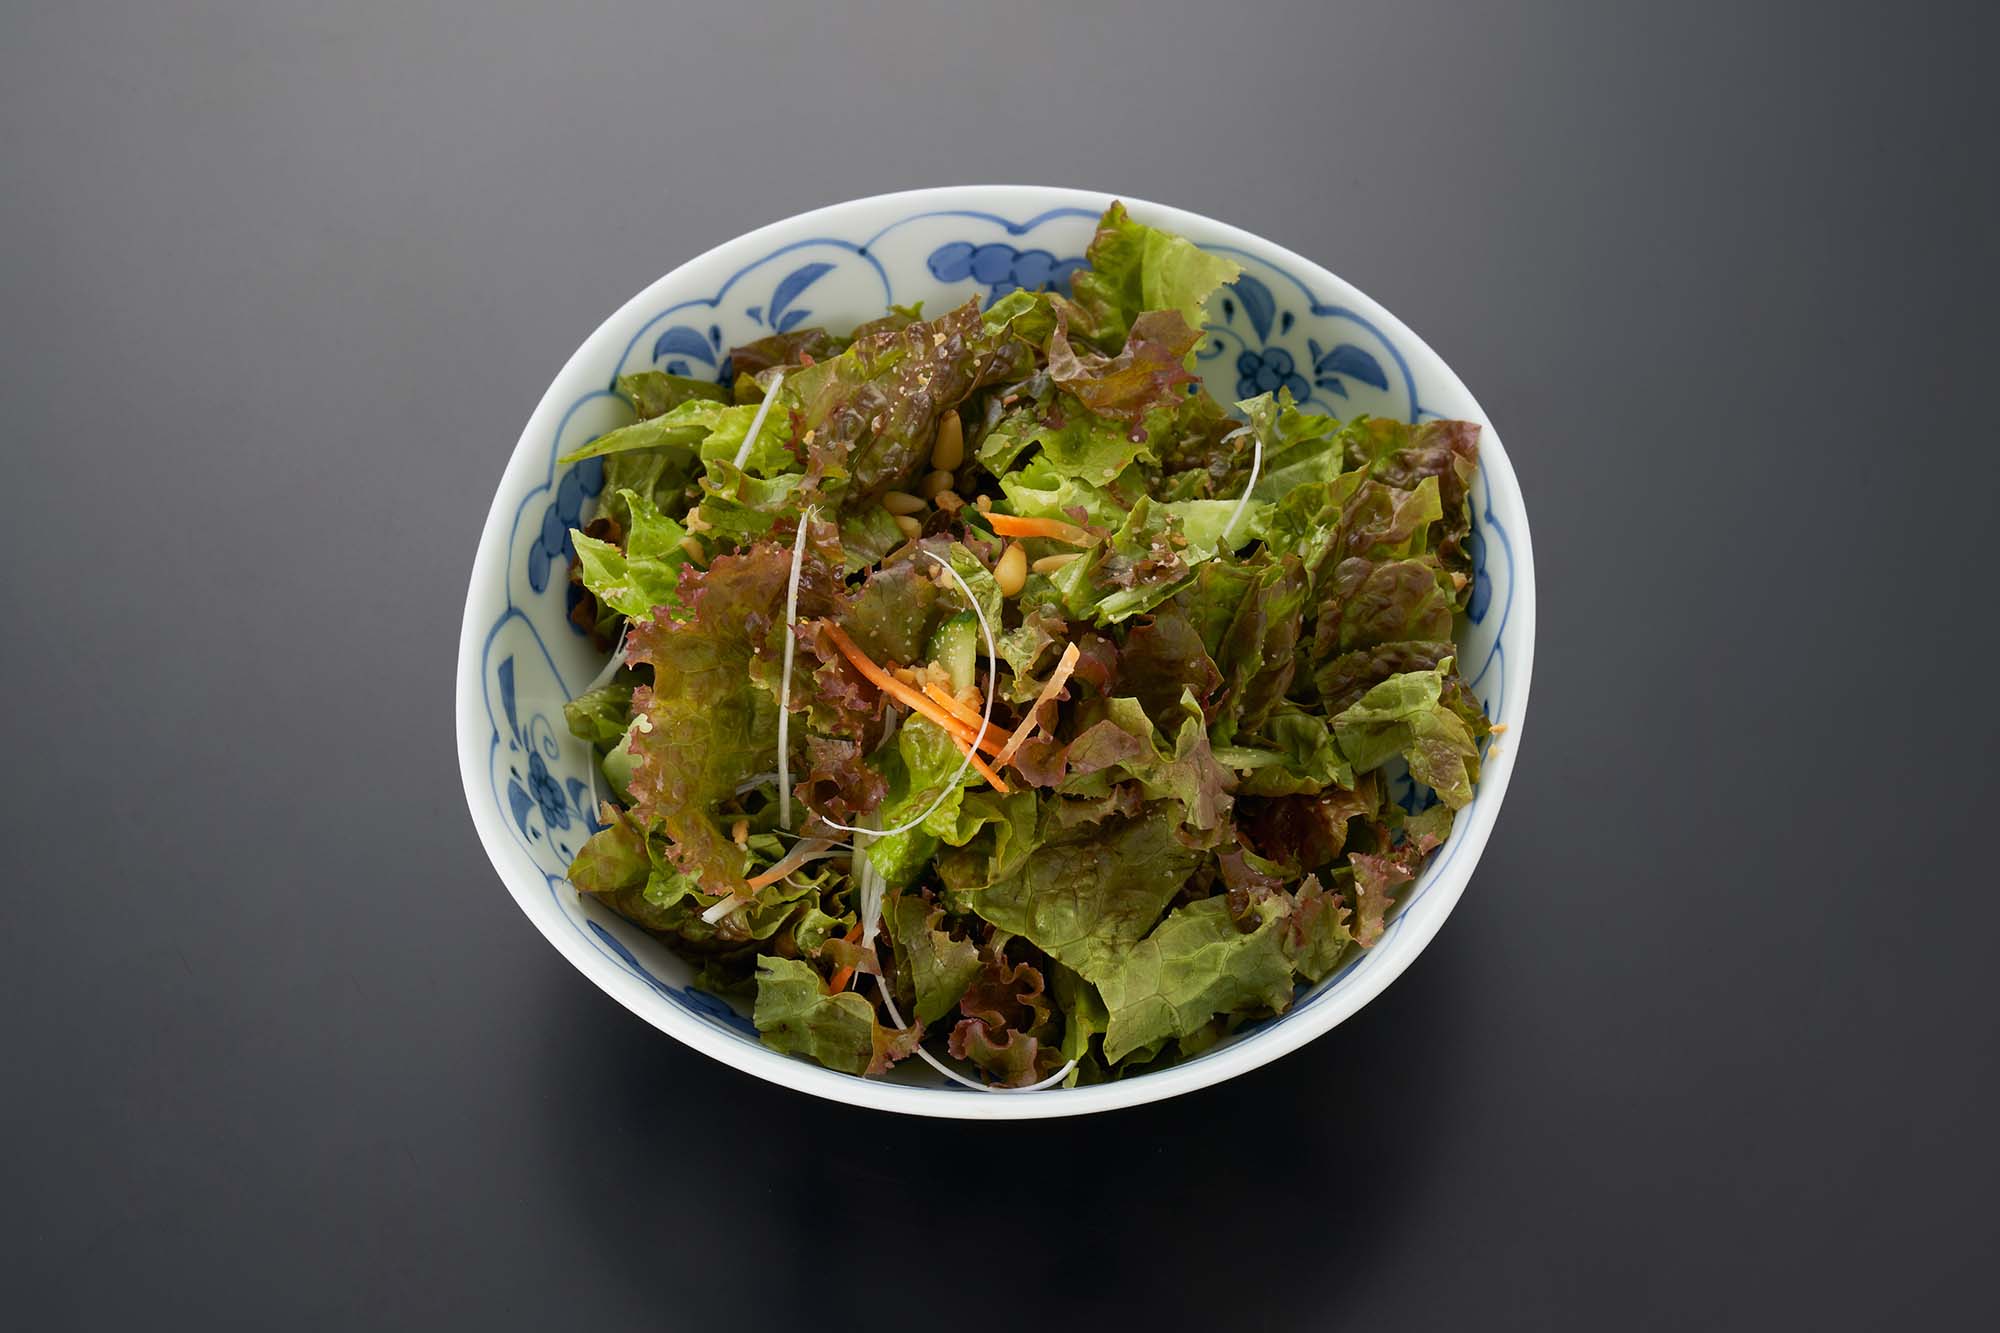 Rokkasen's salad